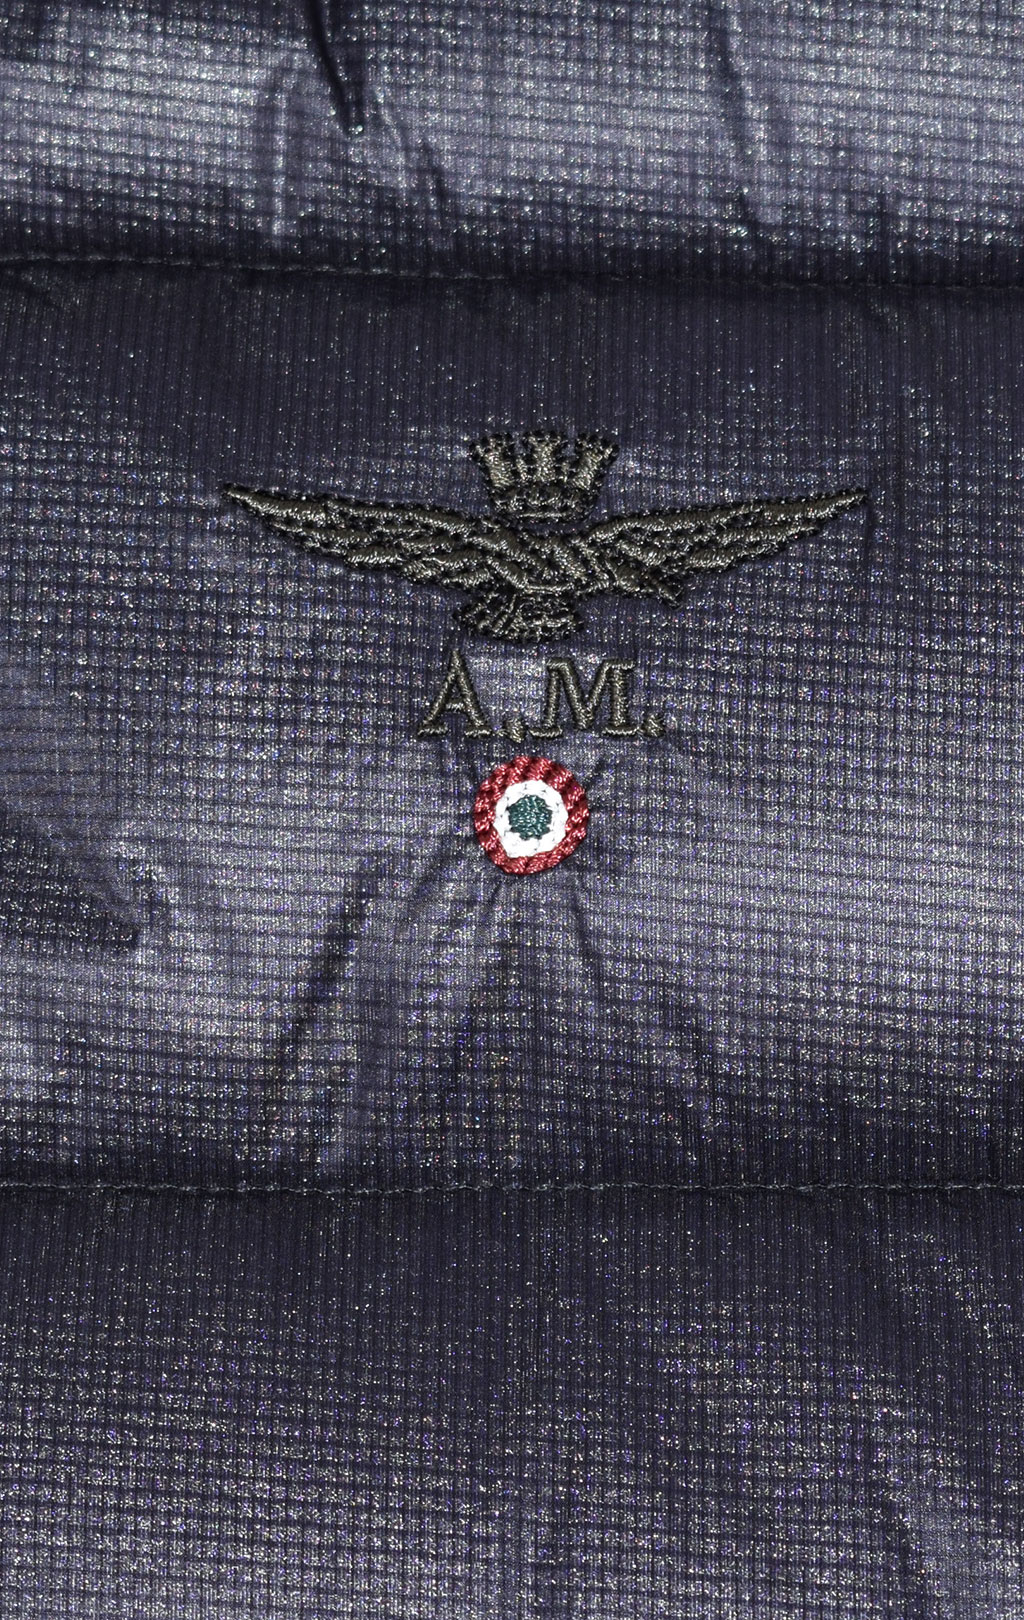 Куртка-жилет AERONAUTICA MILITARE FW 21/22 m/CN blue black (AB 1968) 